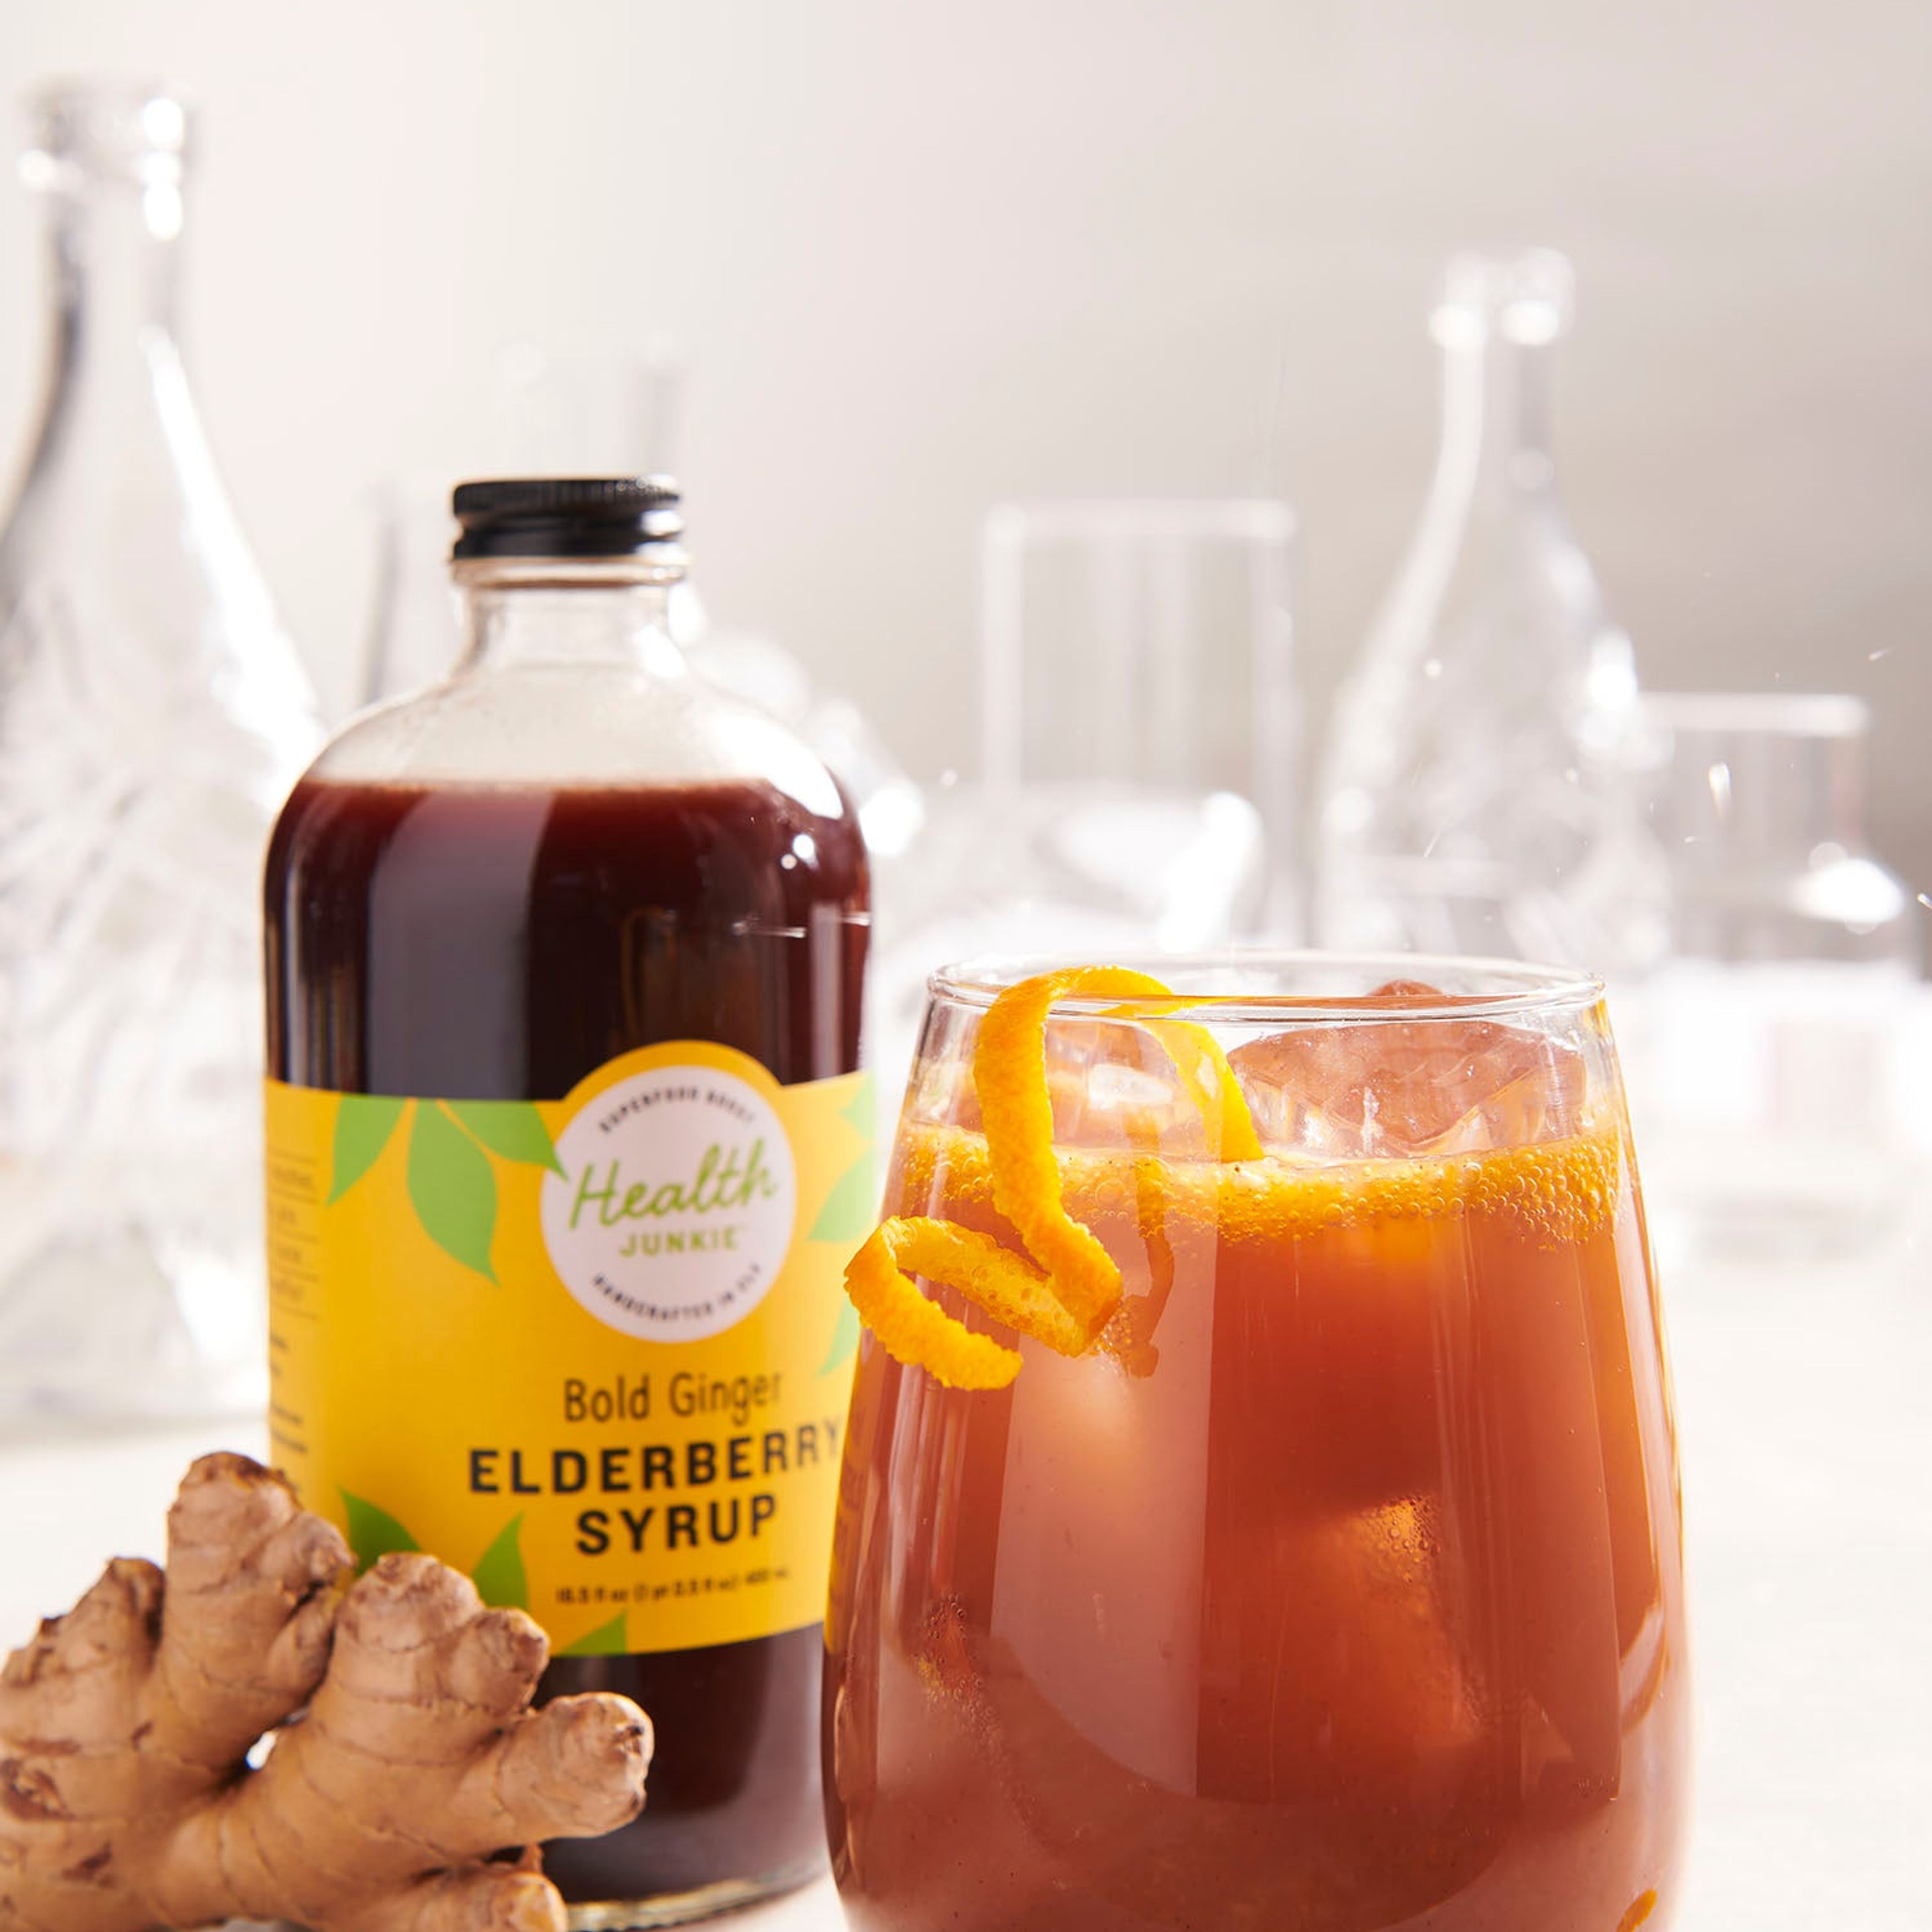 Bold Ginger Elderberry Syrup